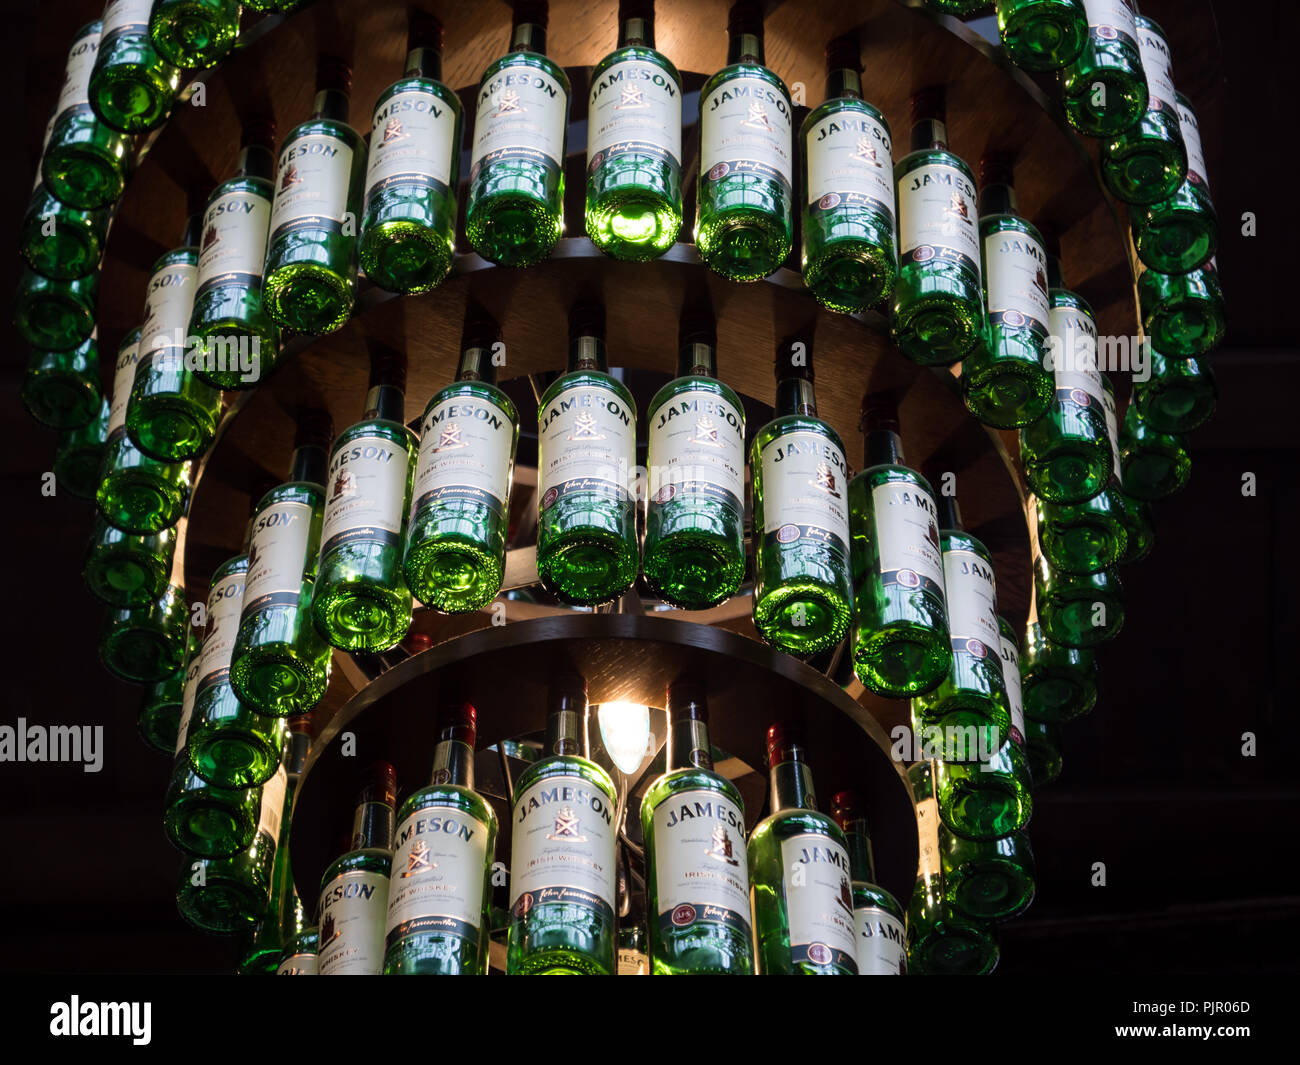 Distillerie Jameson est l'un des célèbres producteurs de whisky irlandais Banque D'Images